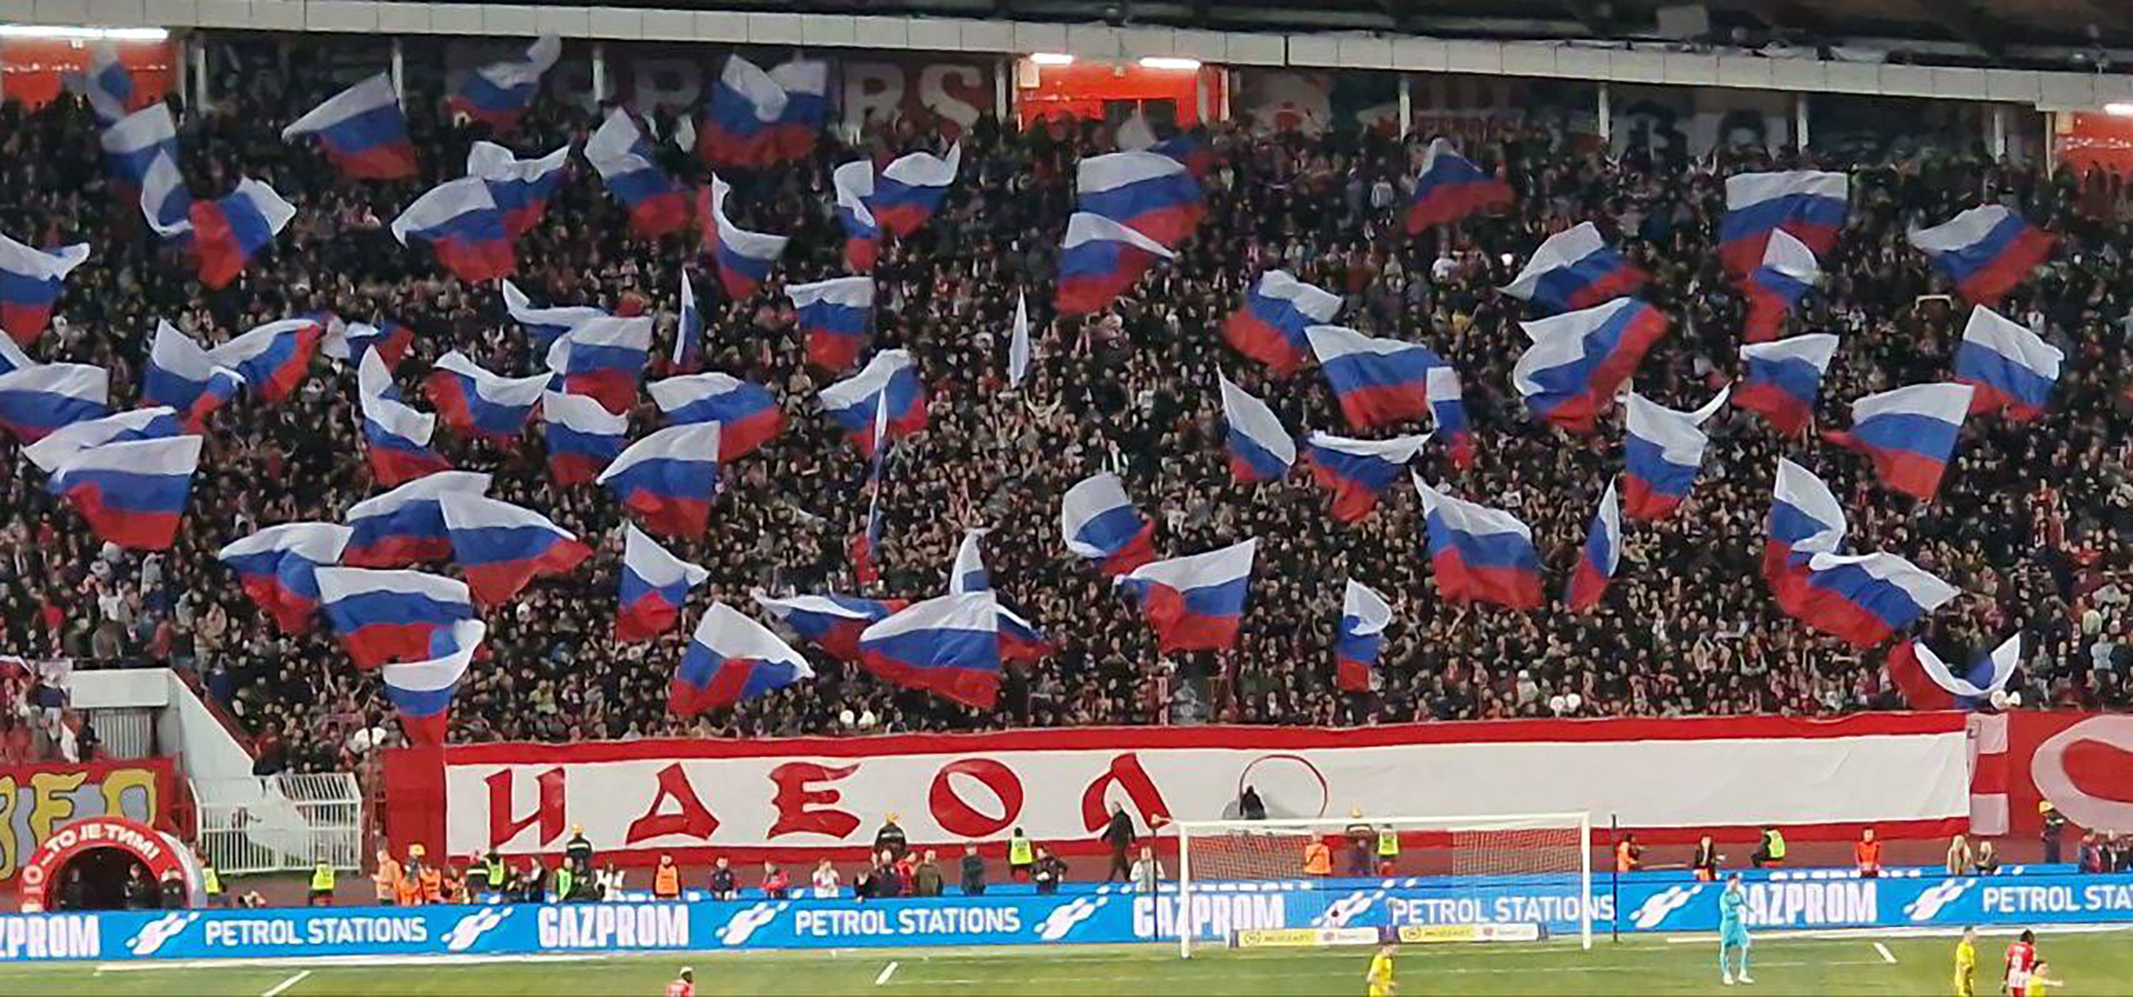 Srpski ili ruski stadioni? Priča o nogometu, politici i organiziranom kriminalu u Srbiji – Ljubomir Filipović